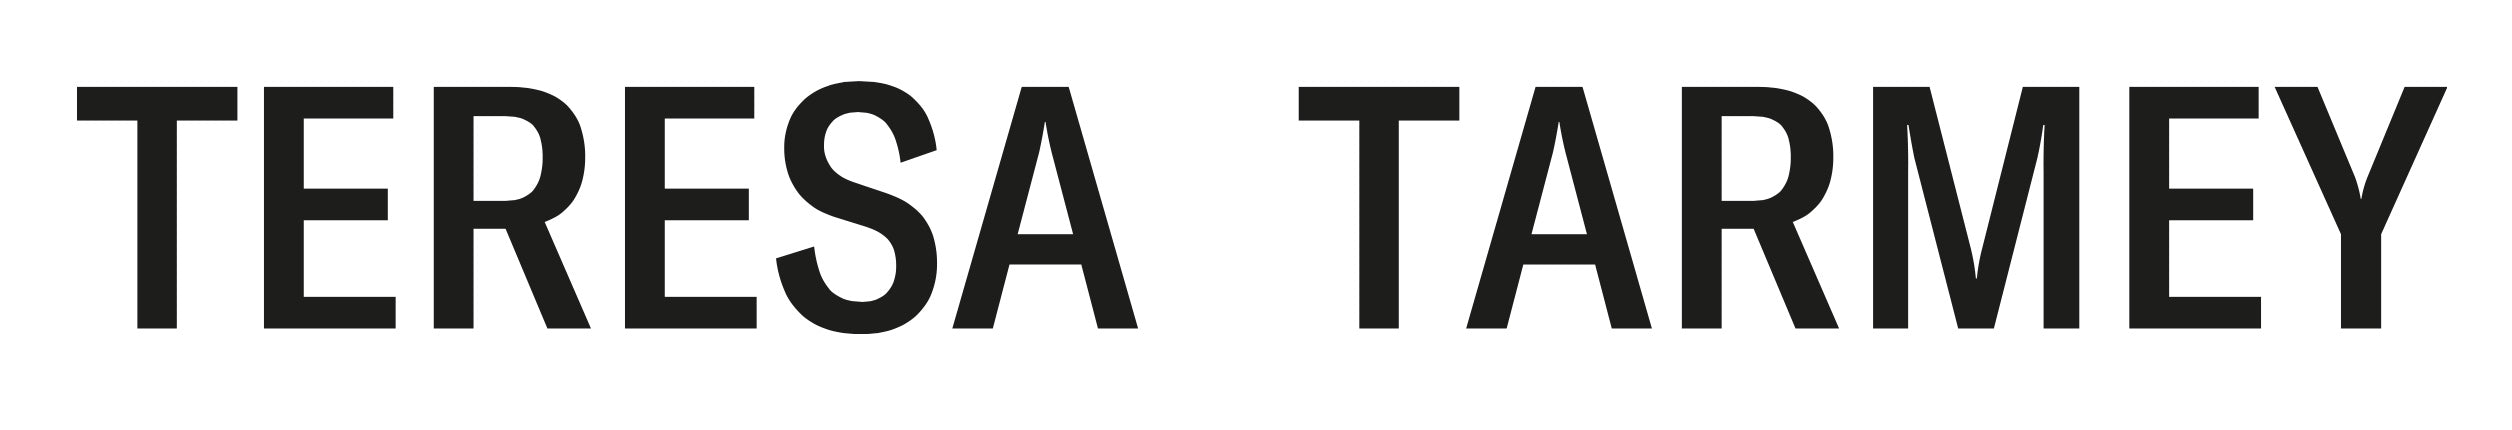 Teresa Tarmey Logo Black text on white background